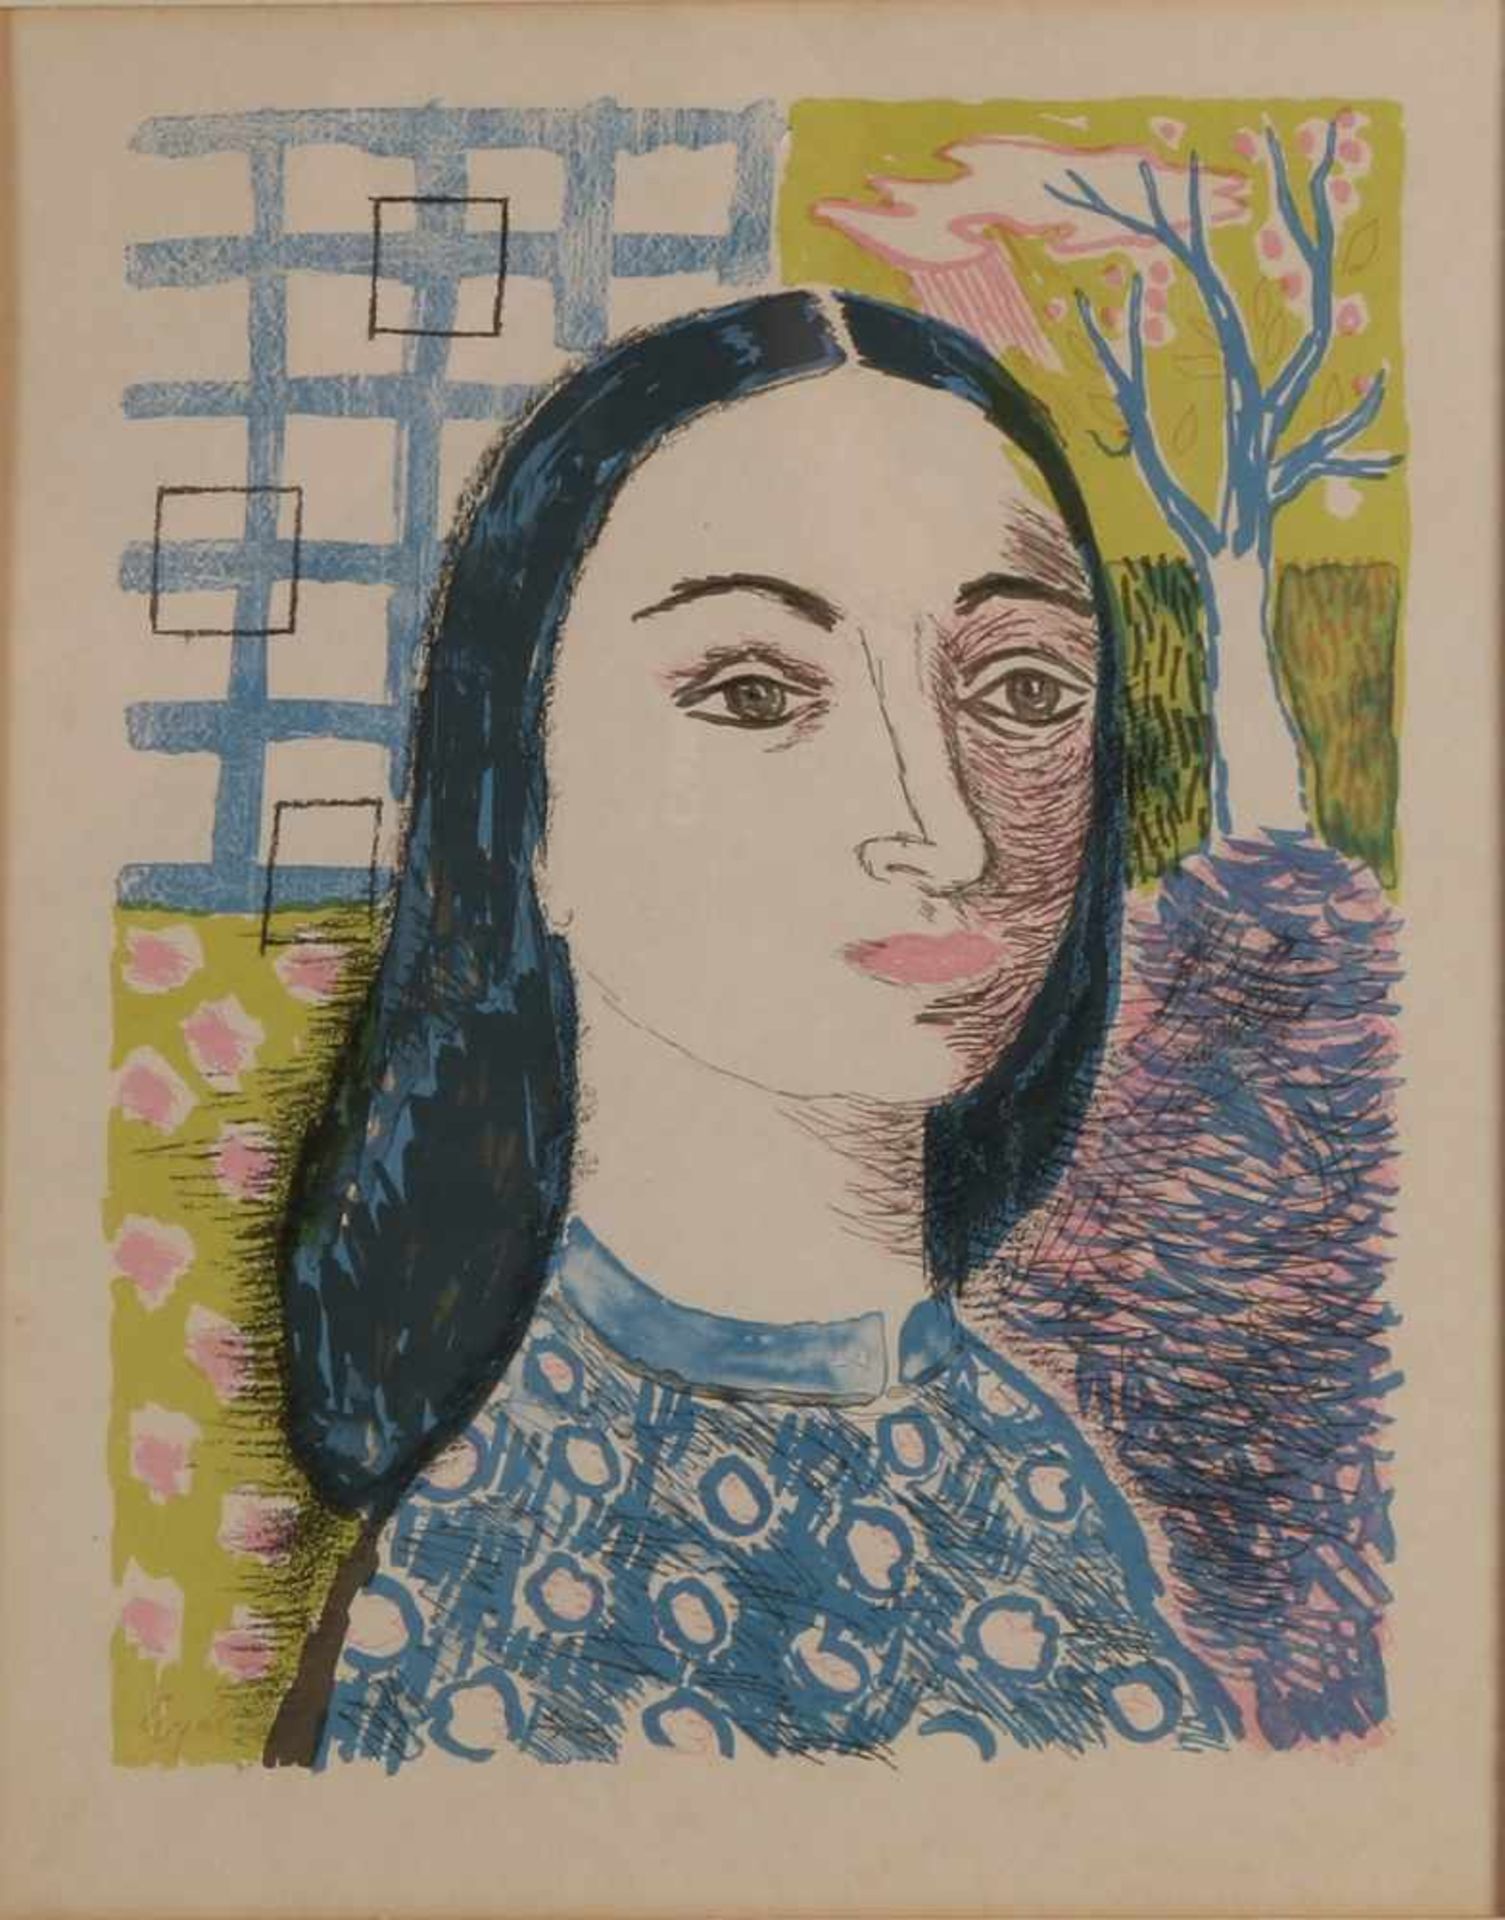 Charles Eijck. 1897 - 1983. Frauenporträt. Lithographie auf Papier. Abmessungen: H 36 x B 28 cm.